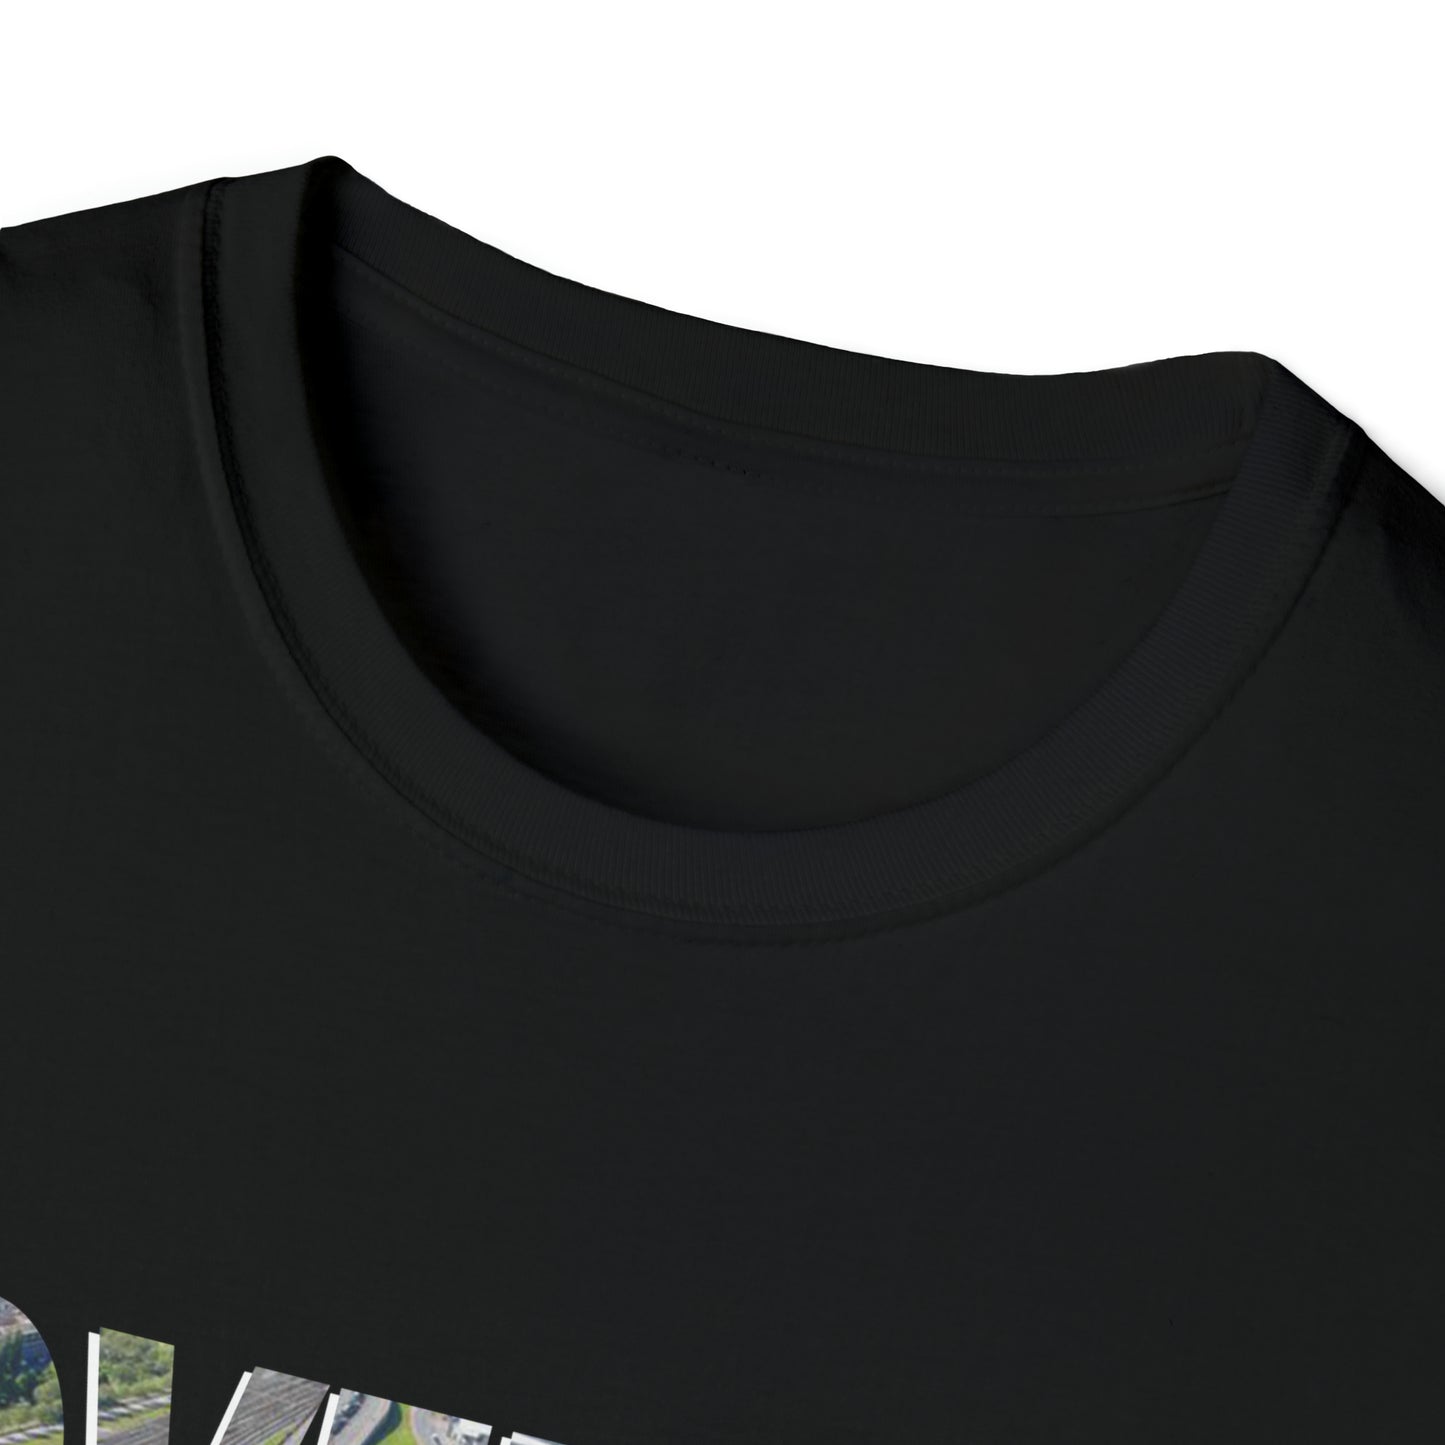 T-shirt regular zwart - de Kuip - Overal waar jij gaat - logo voor groot